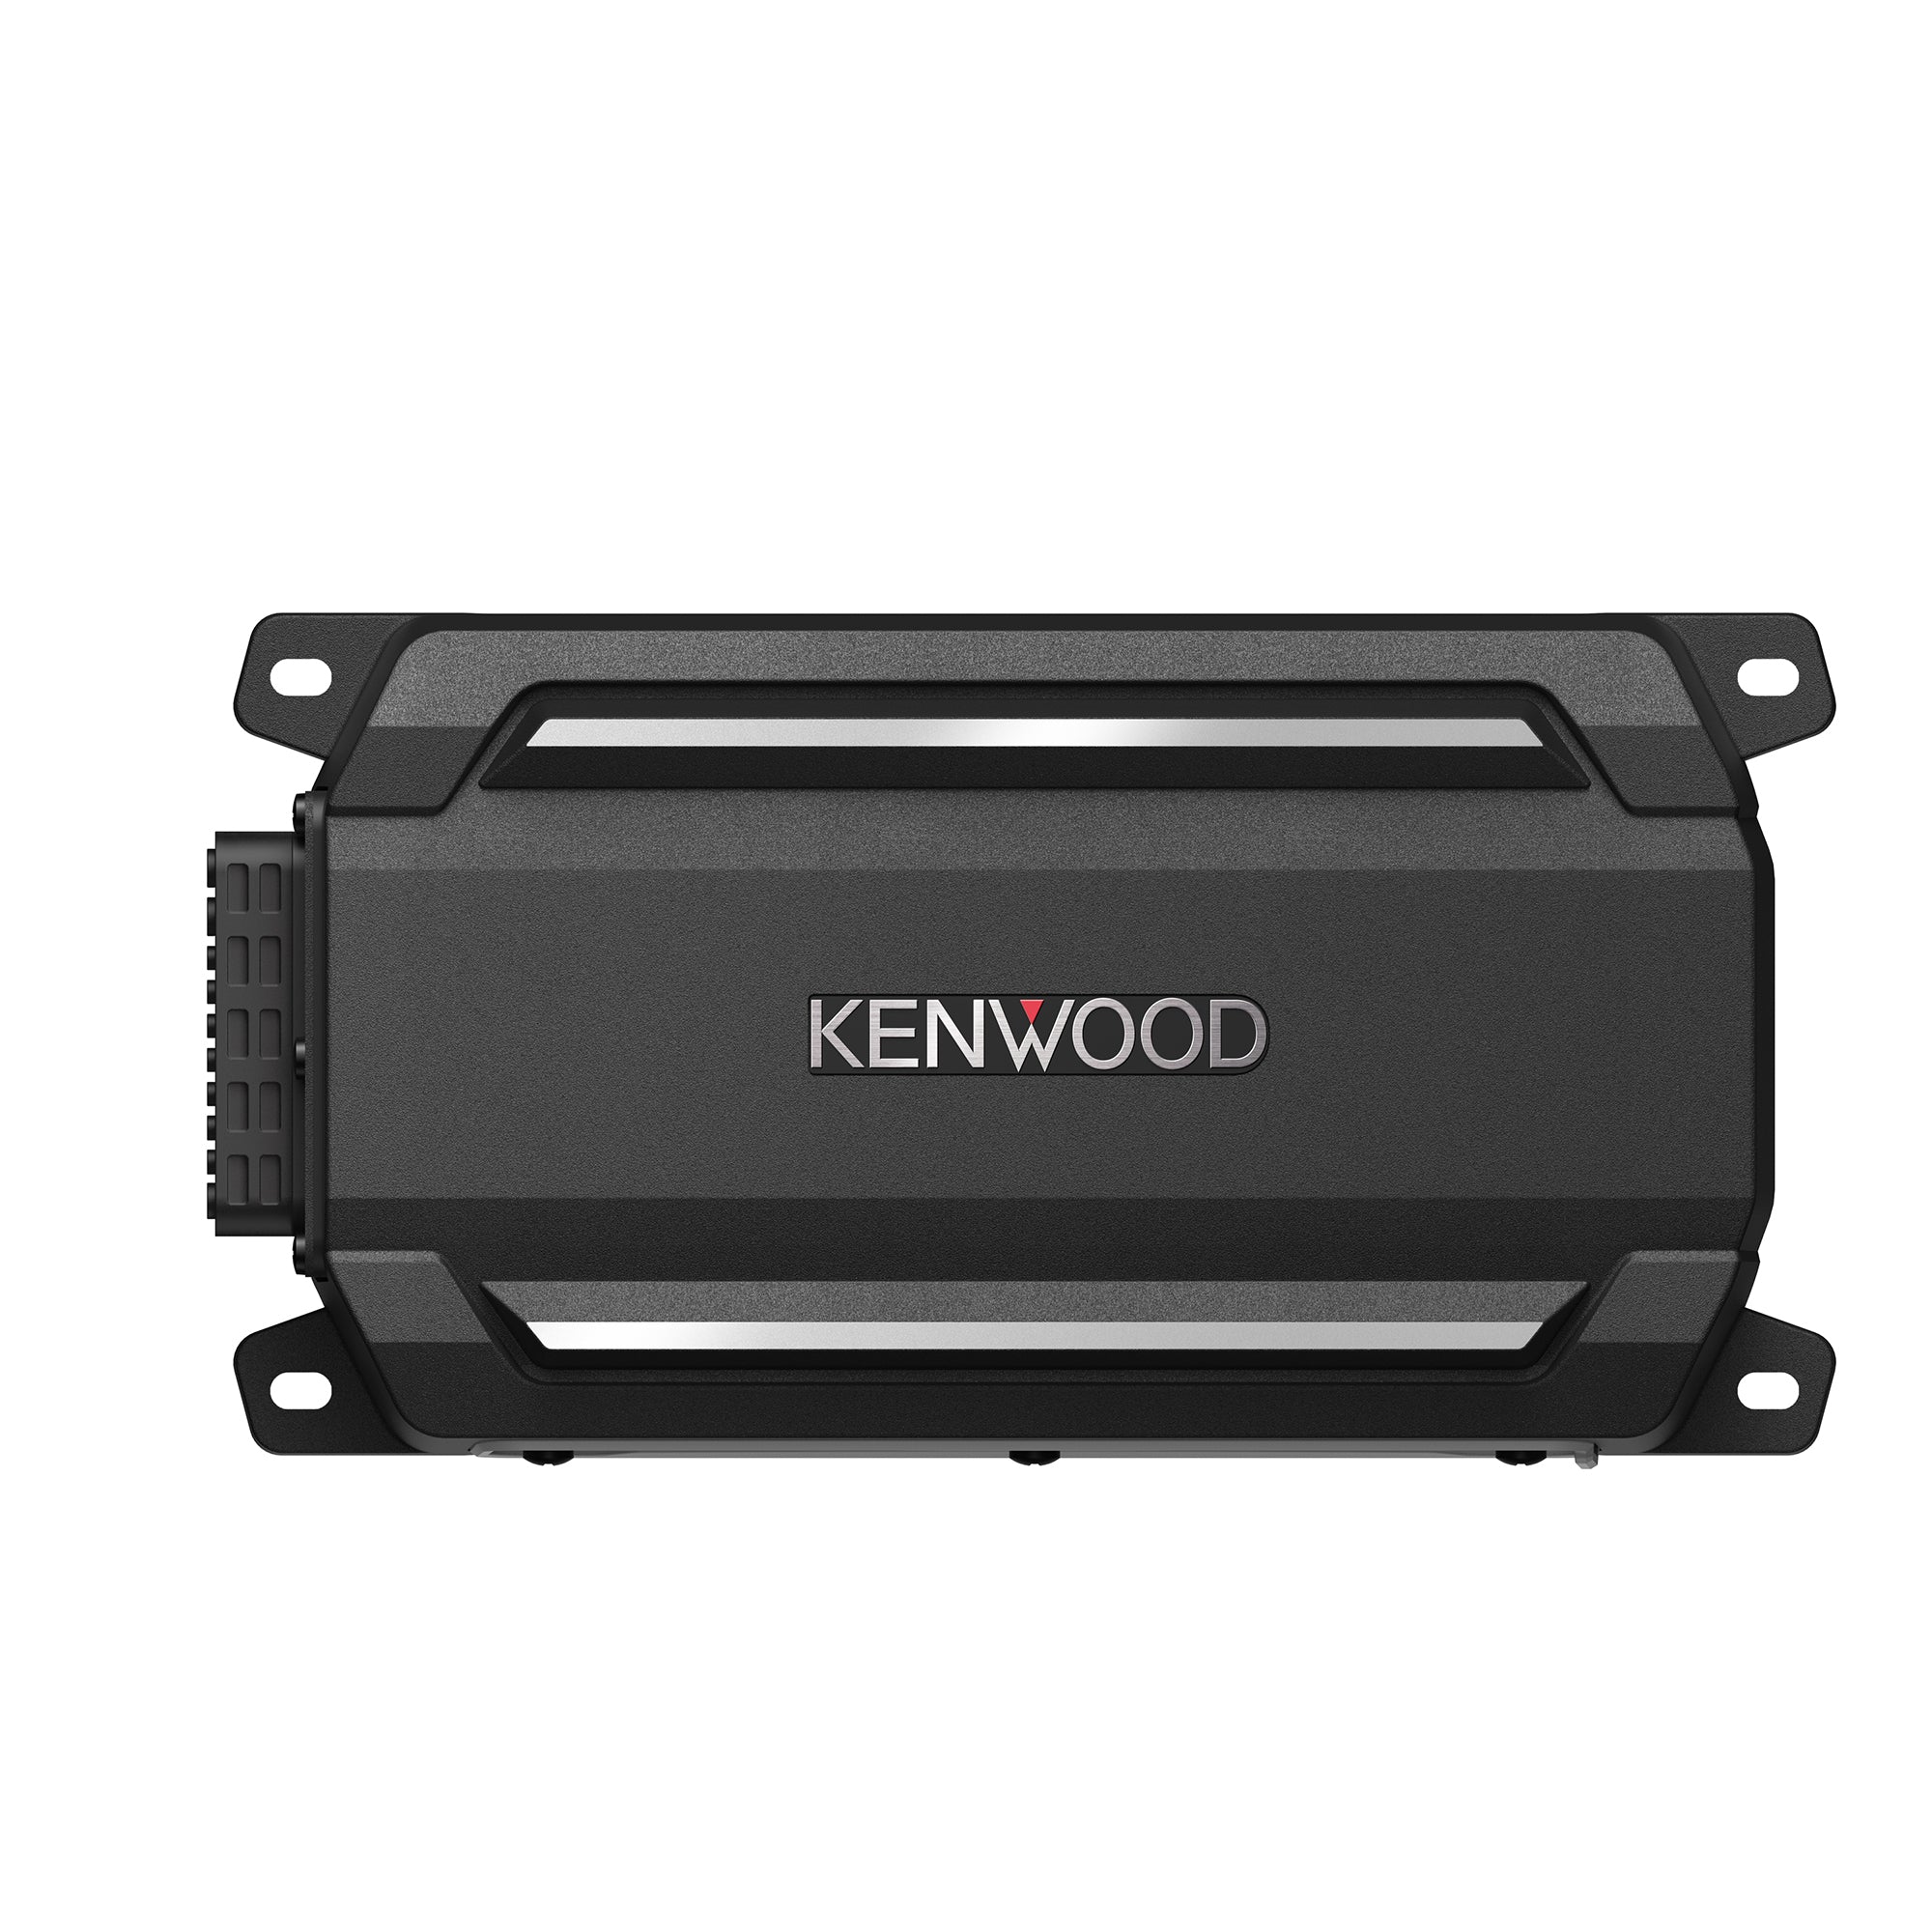 Kenwood, Kenwood KAC-M5001, Monoblock Marine / Powersports Amplifier - 600 Watts RMS x 1